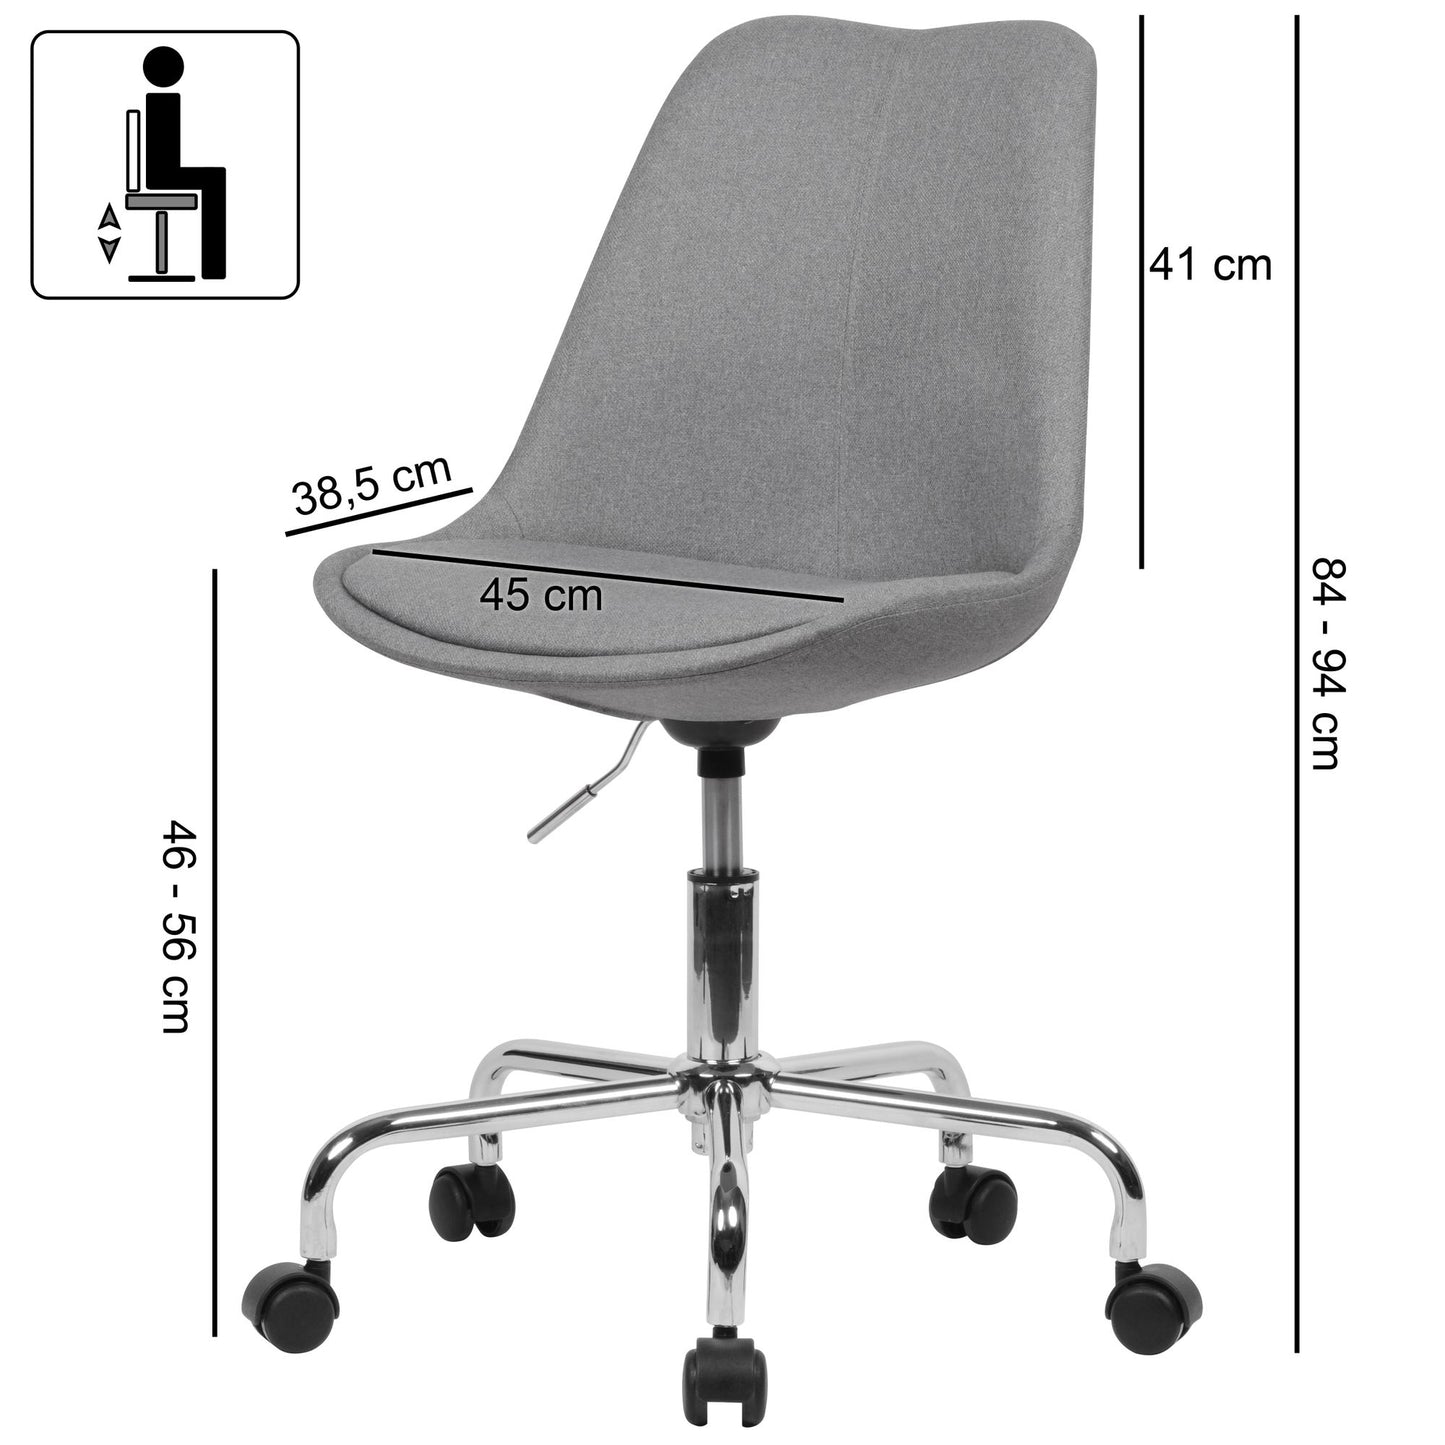 Chaise de bureau Nancy's Ecorse - Chaise seau pivotante - Chaise pivotante - Tissu - Gris clair